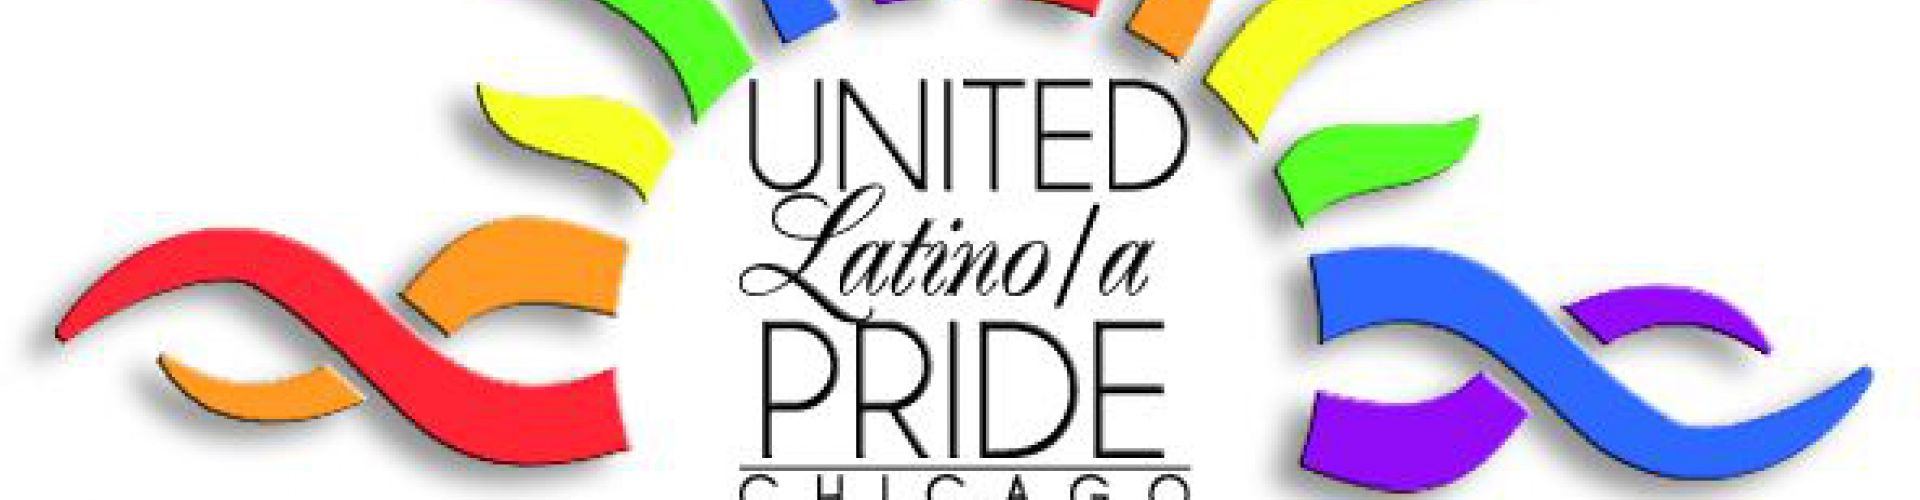 United Latino Pride's profile